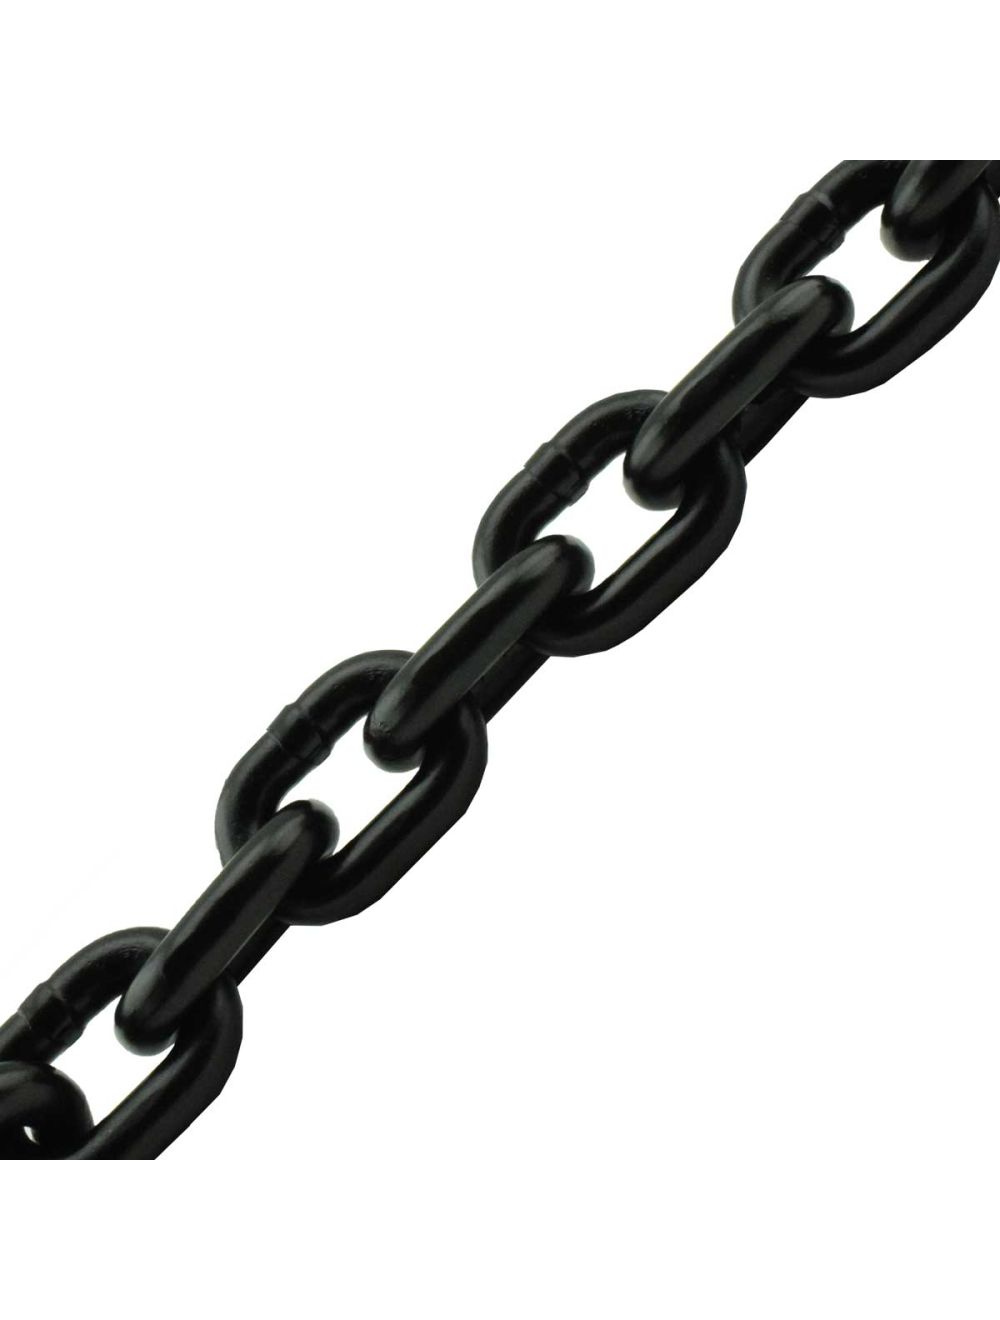 1/4 x 10' Grade 80 Chain Black Oxide